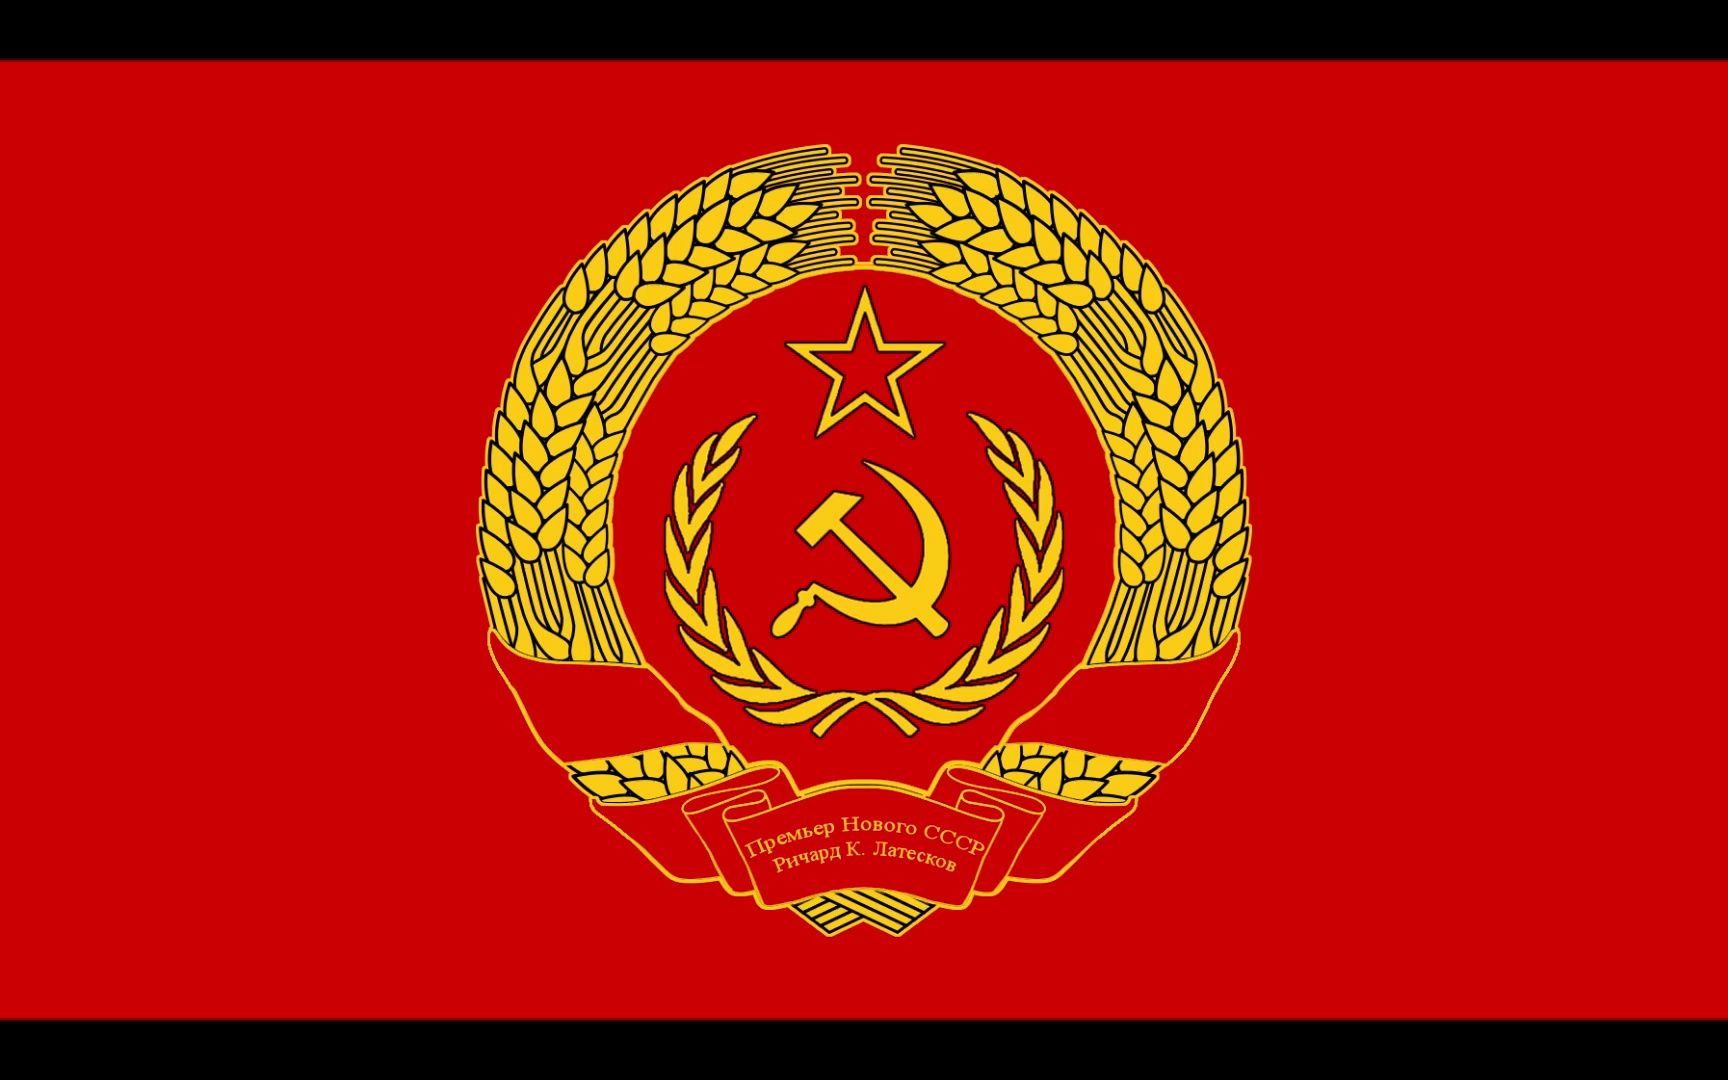 苏俄旗帜1917图片